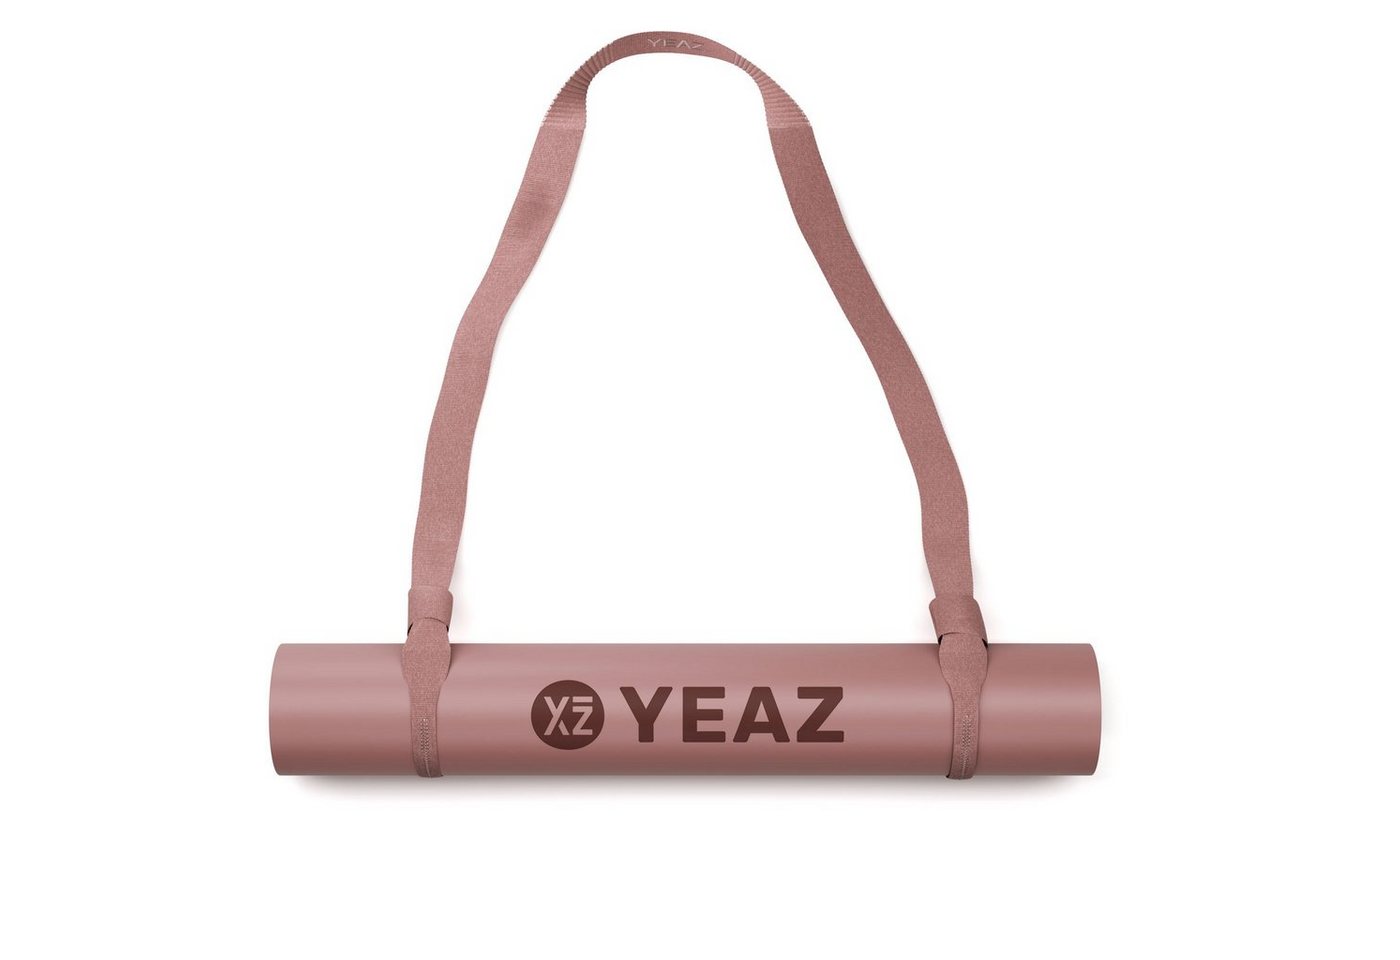 YEAZ Yogamatte MOVE UP set - yogaband & yogamatte von YEAZ